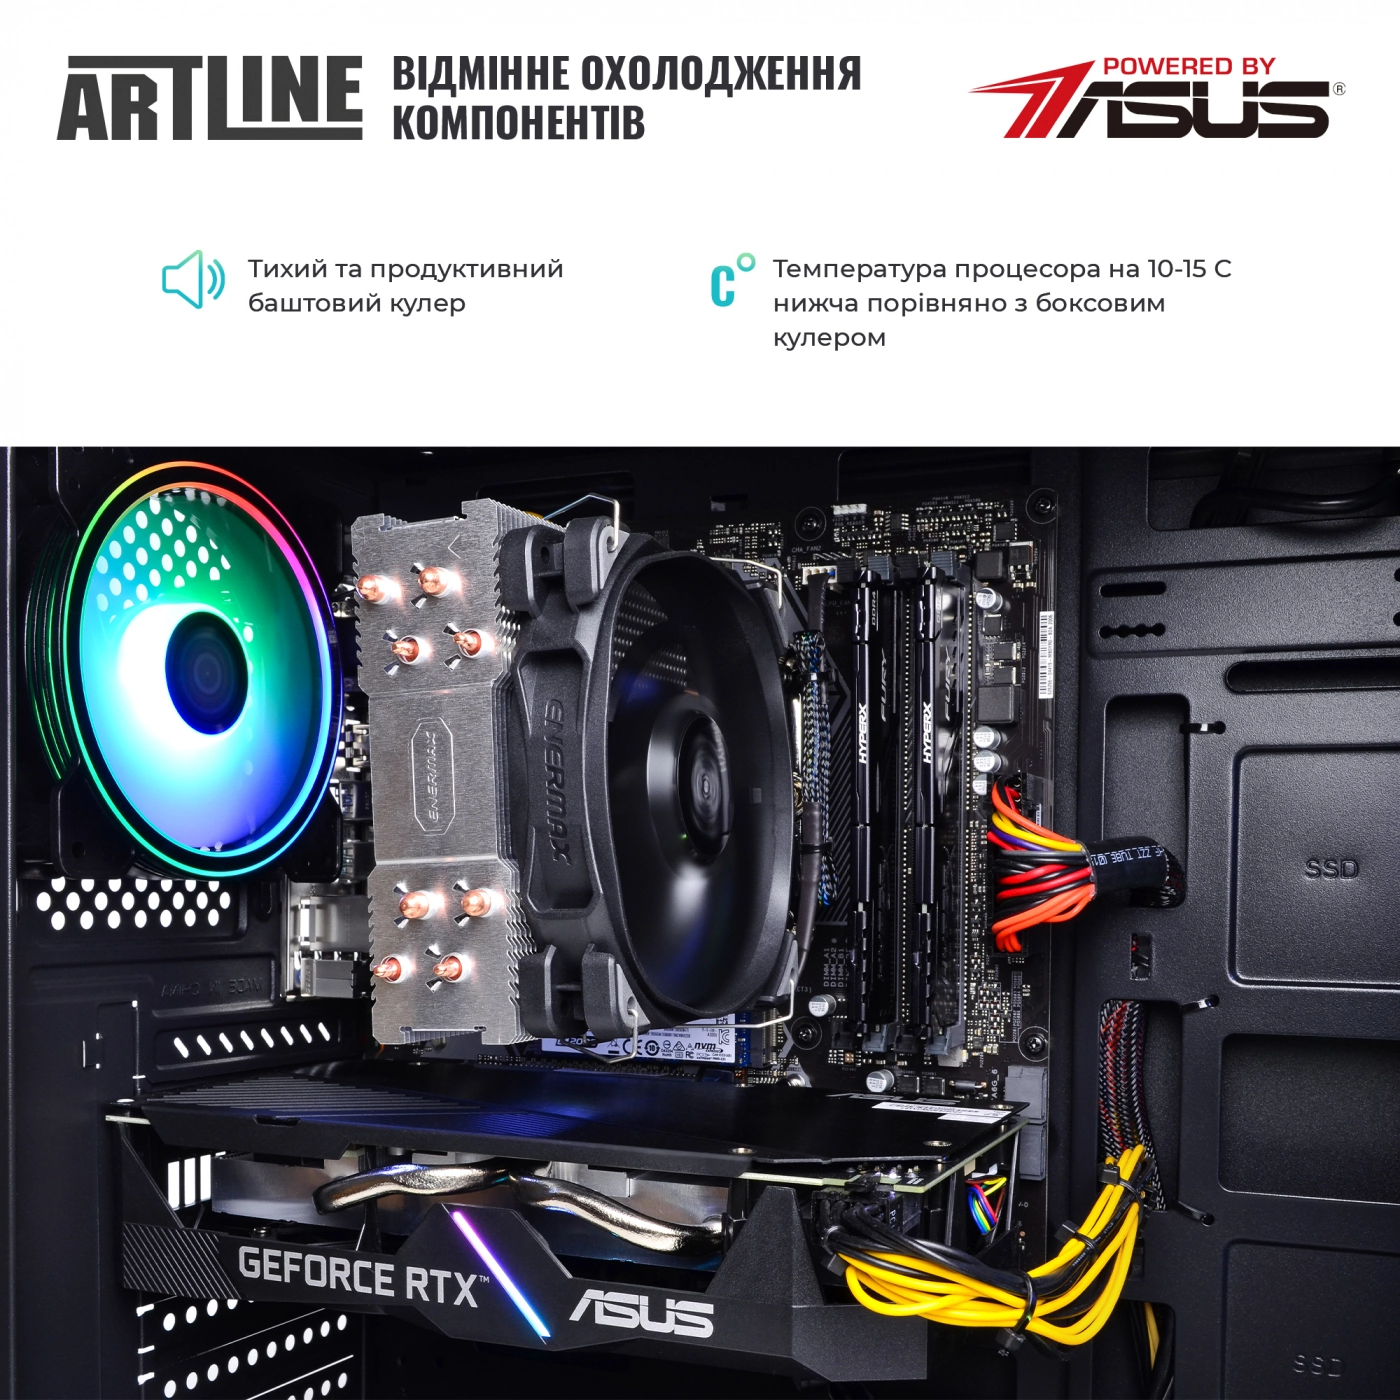 Купить Компьютер ARTLINE Gaming X83v06 - фото 7